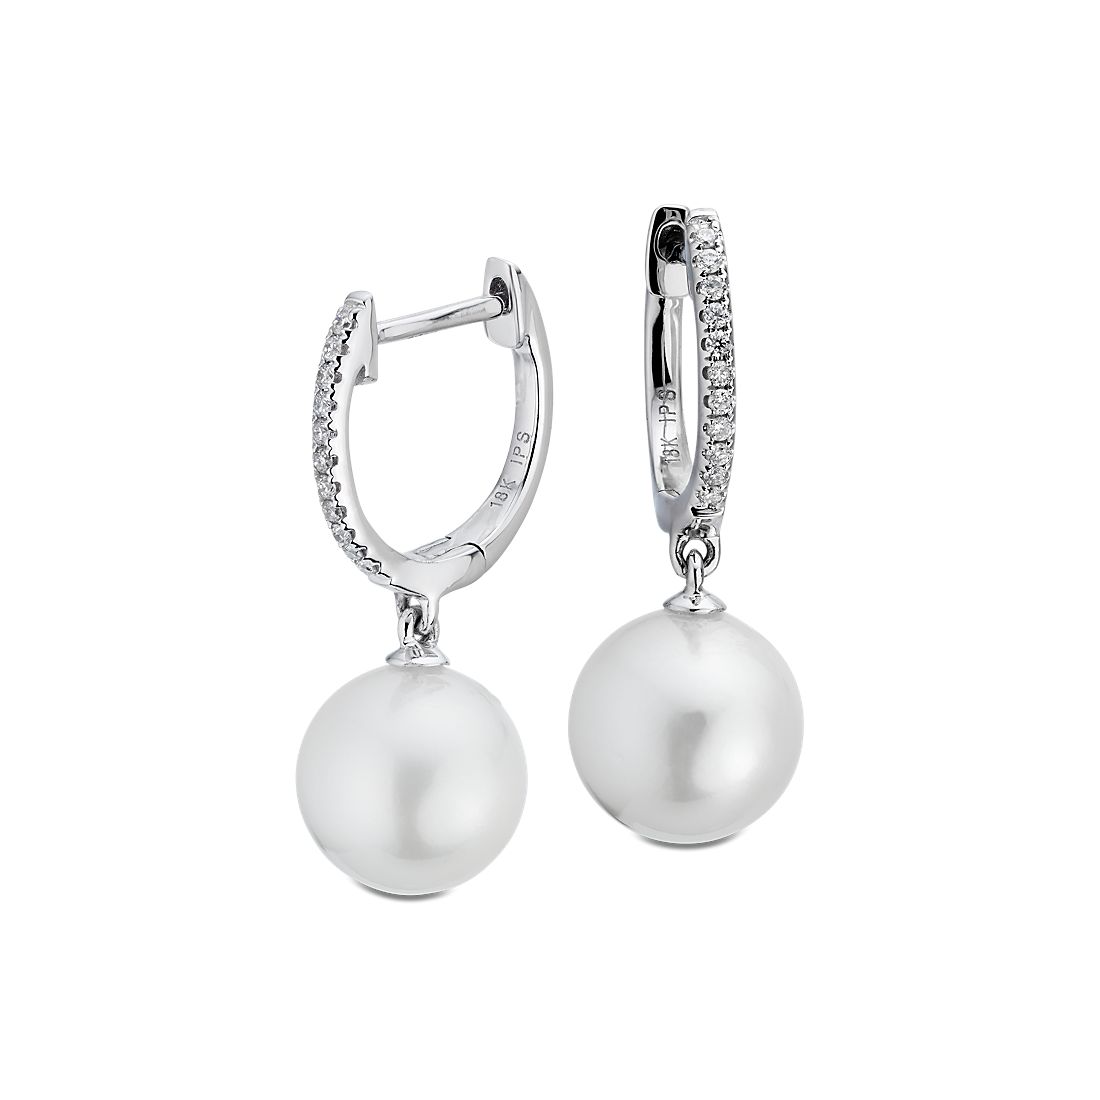 Aretes tipo argolla de diamantes y perlas cultivadas blancas del Mar del Sur  en oro blanco de 18 k (8-9 mm)